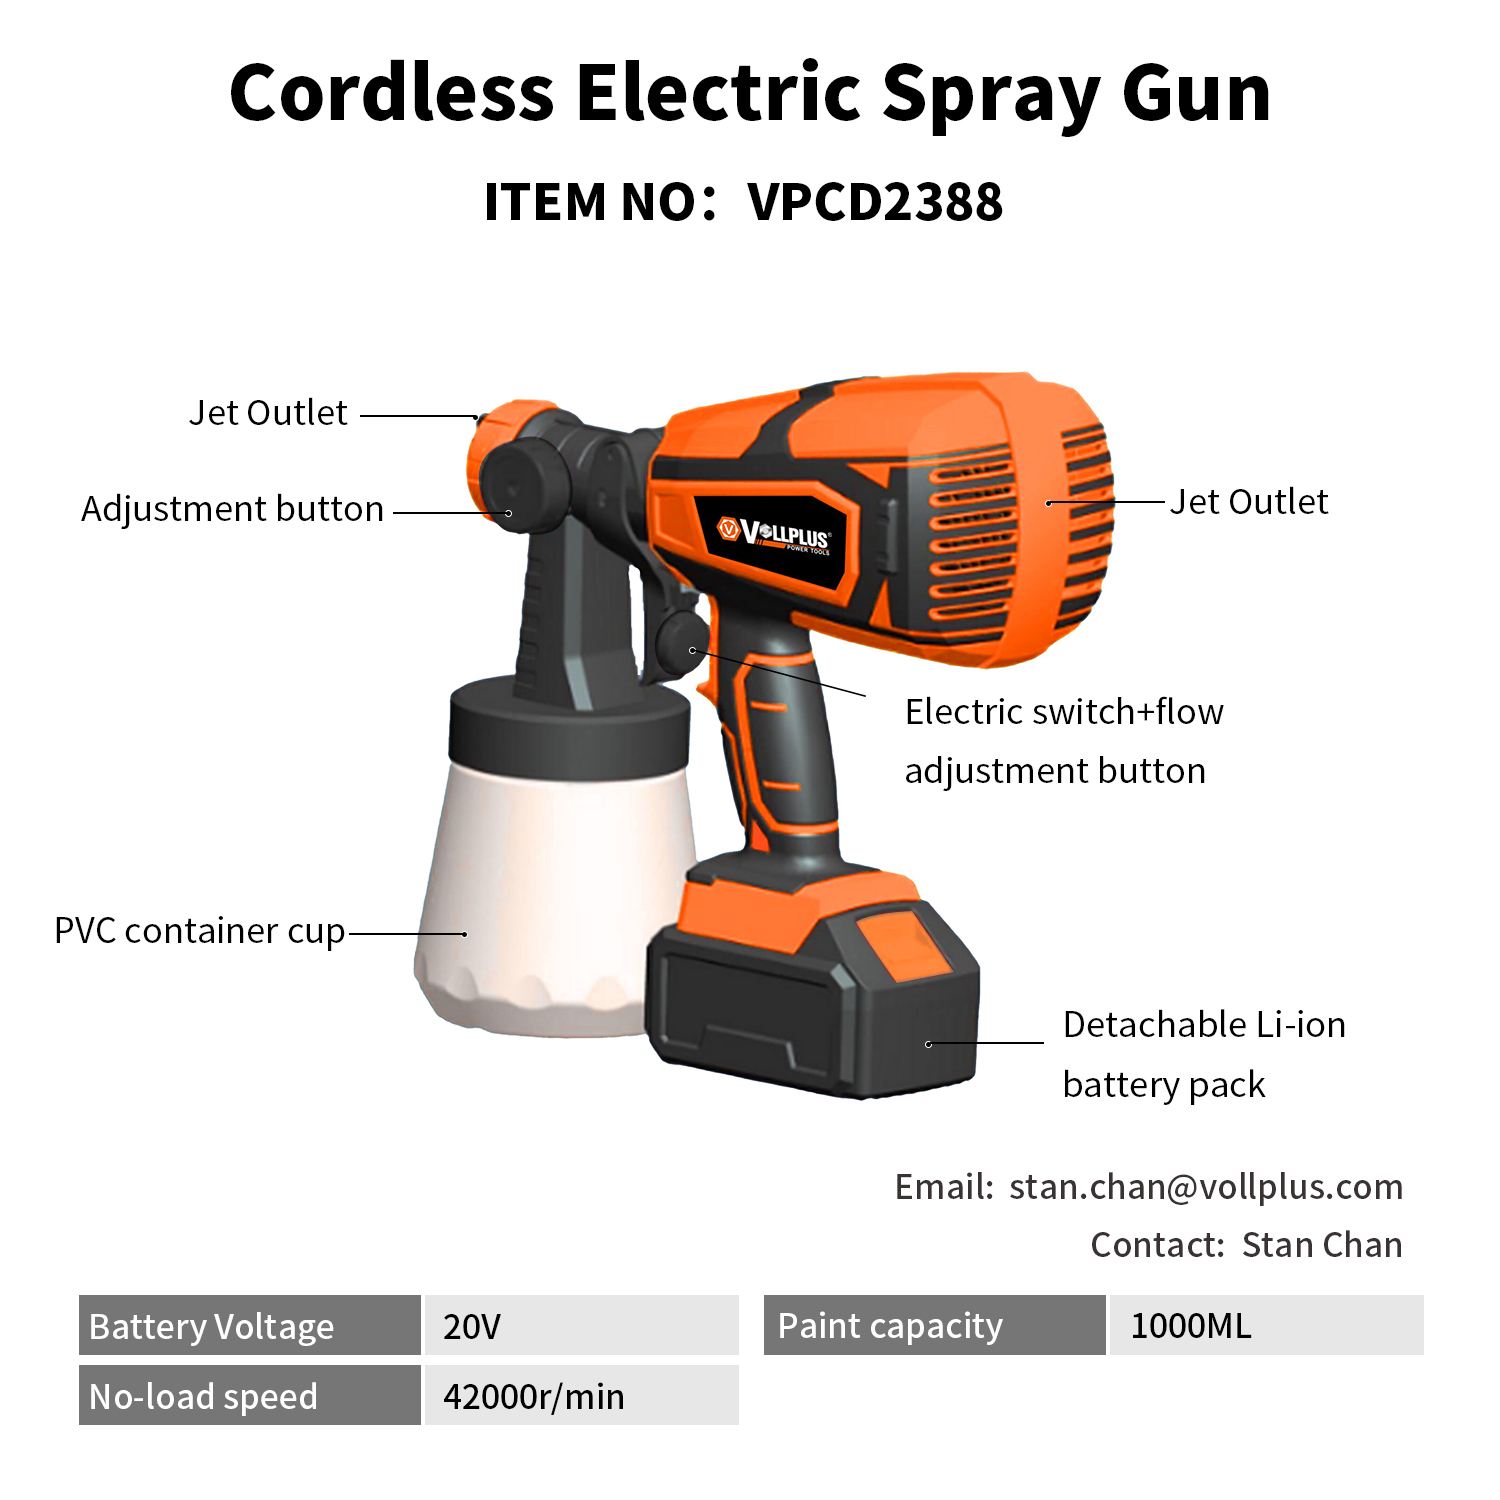 Cordless Electric Spray Gun